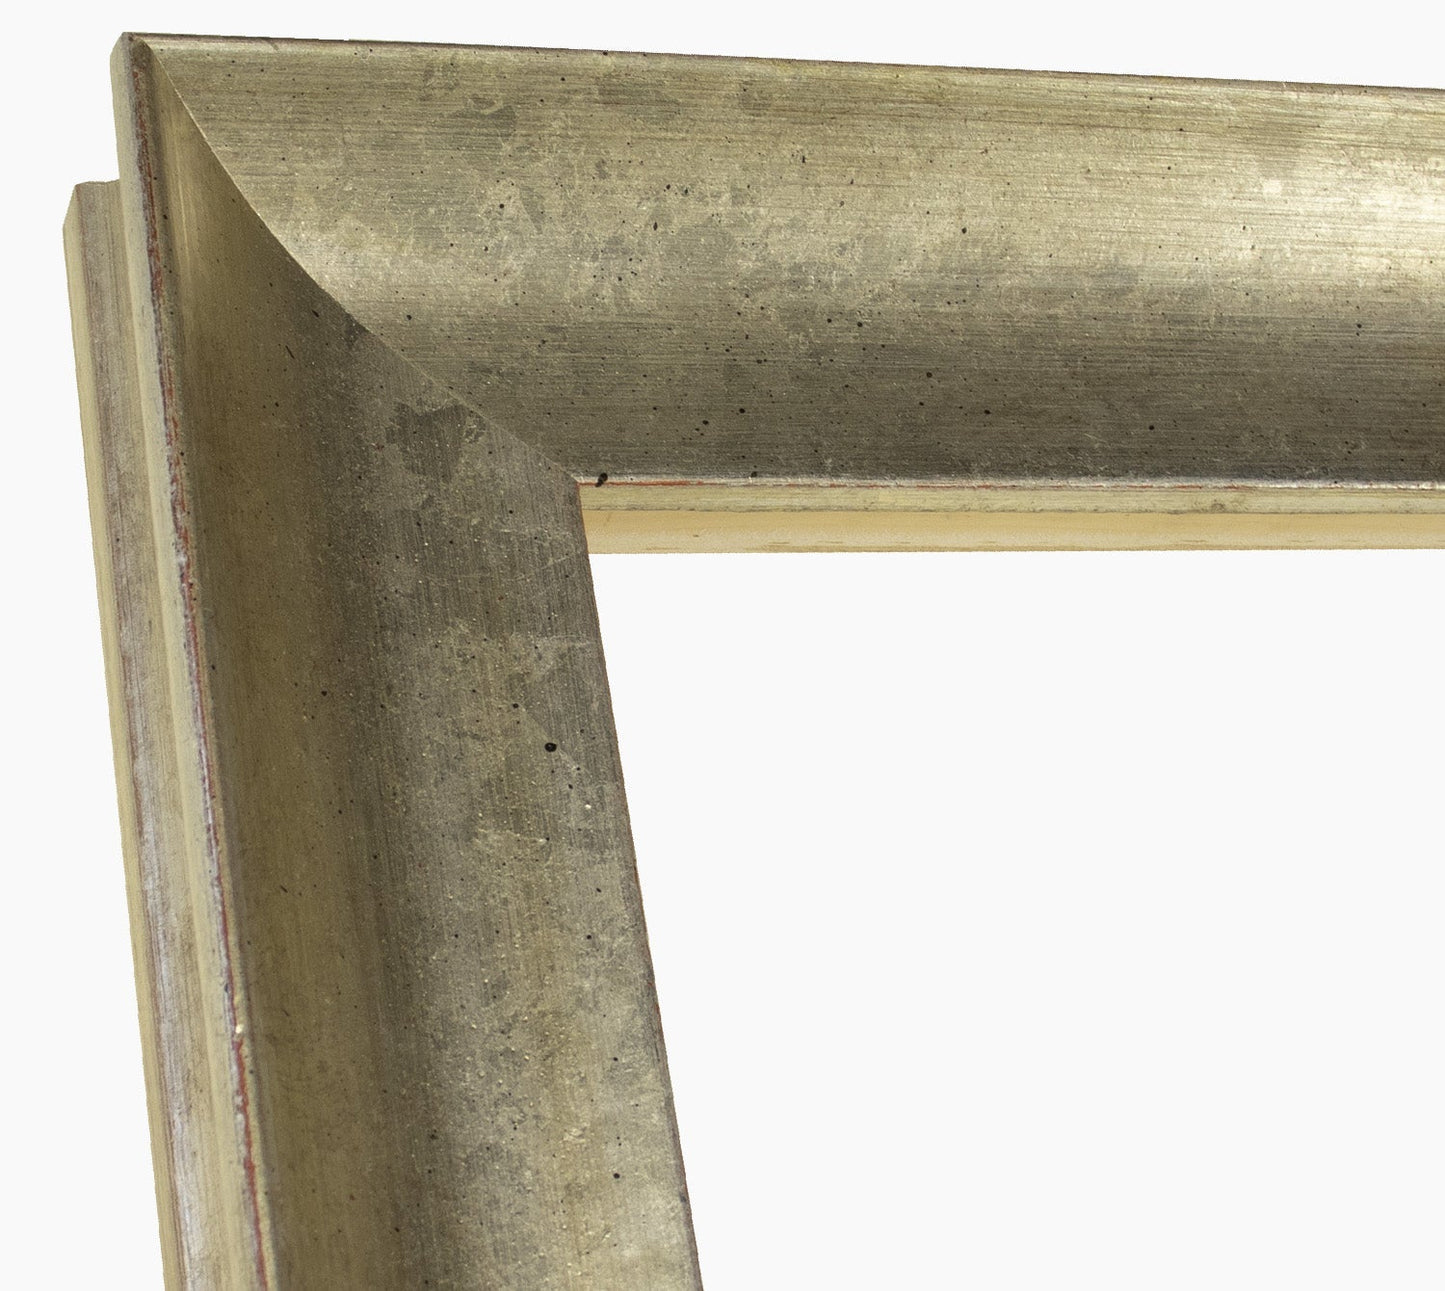 444.011 cadre en bois à la feuille d'argent mesure de profil 65x55 mm Lombarda cornici S.n.c.